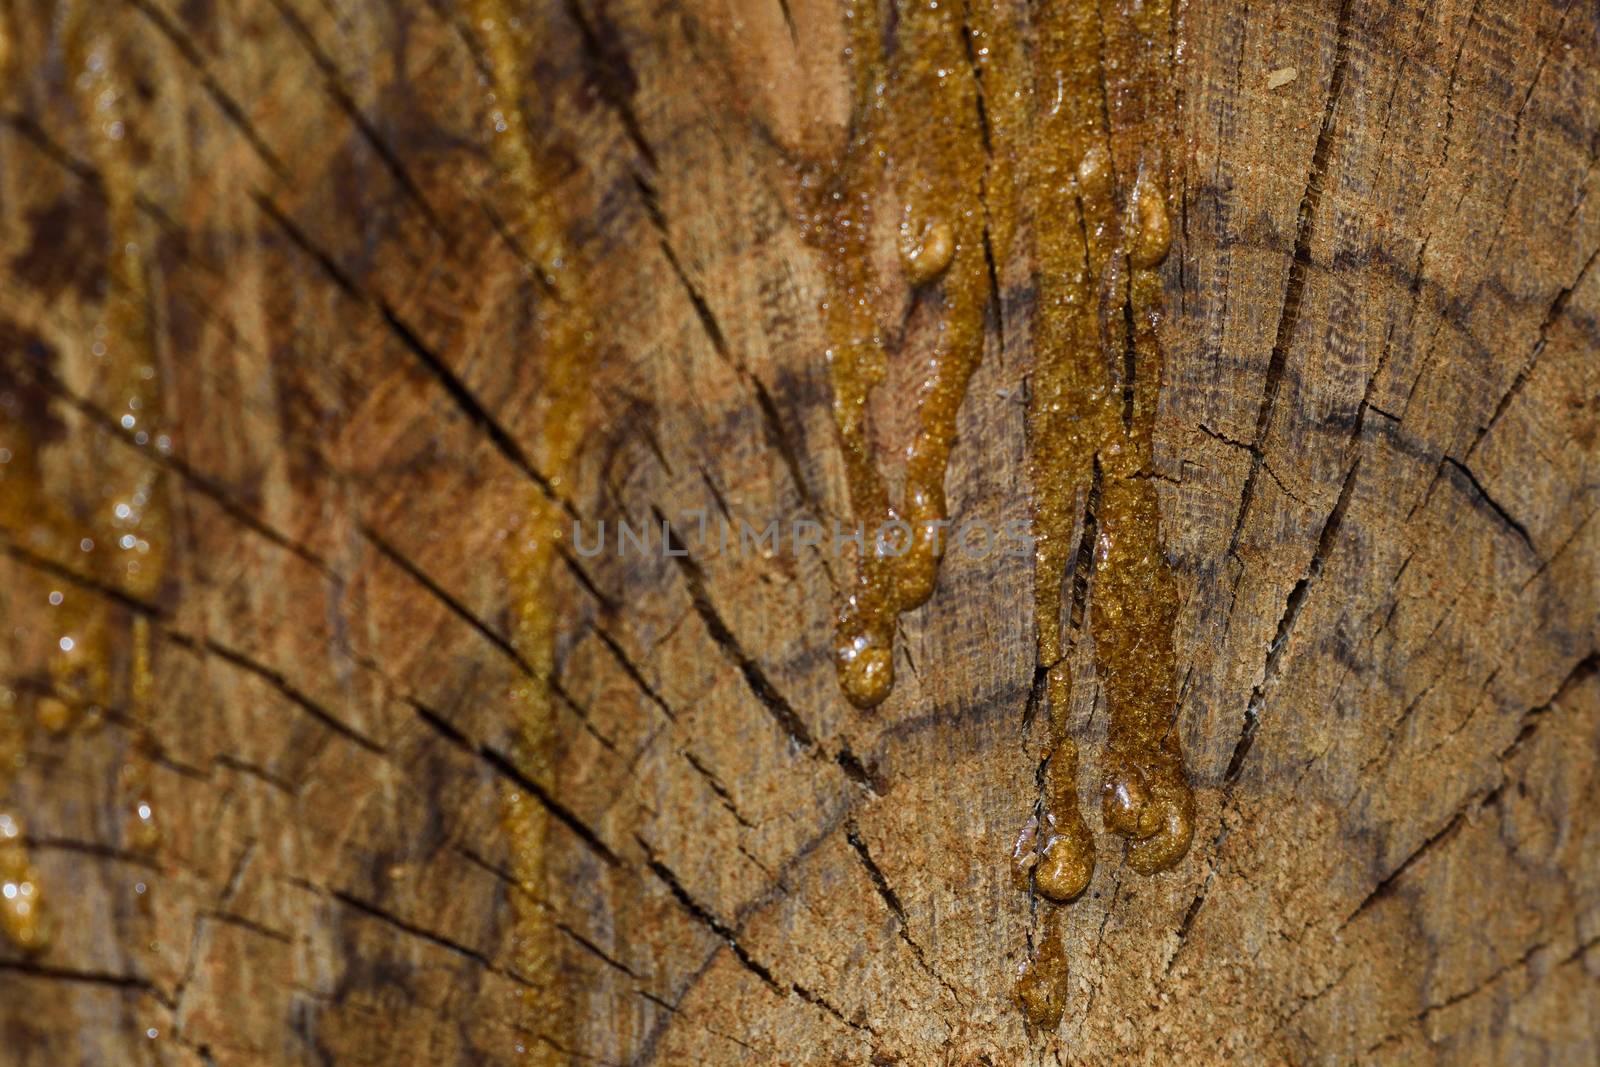 Hardened Wood Sap On Wooden Stump Crosscut (Vachellia sp.) by jjvanginkel